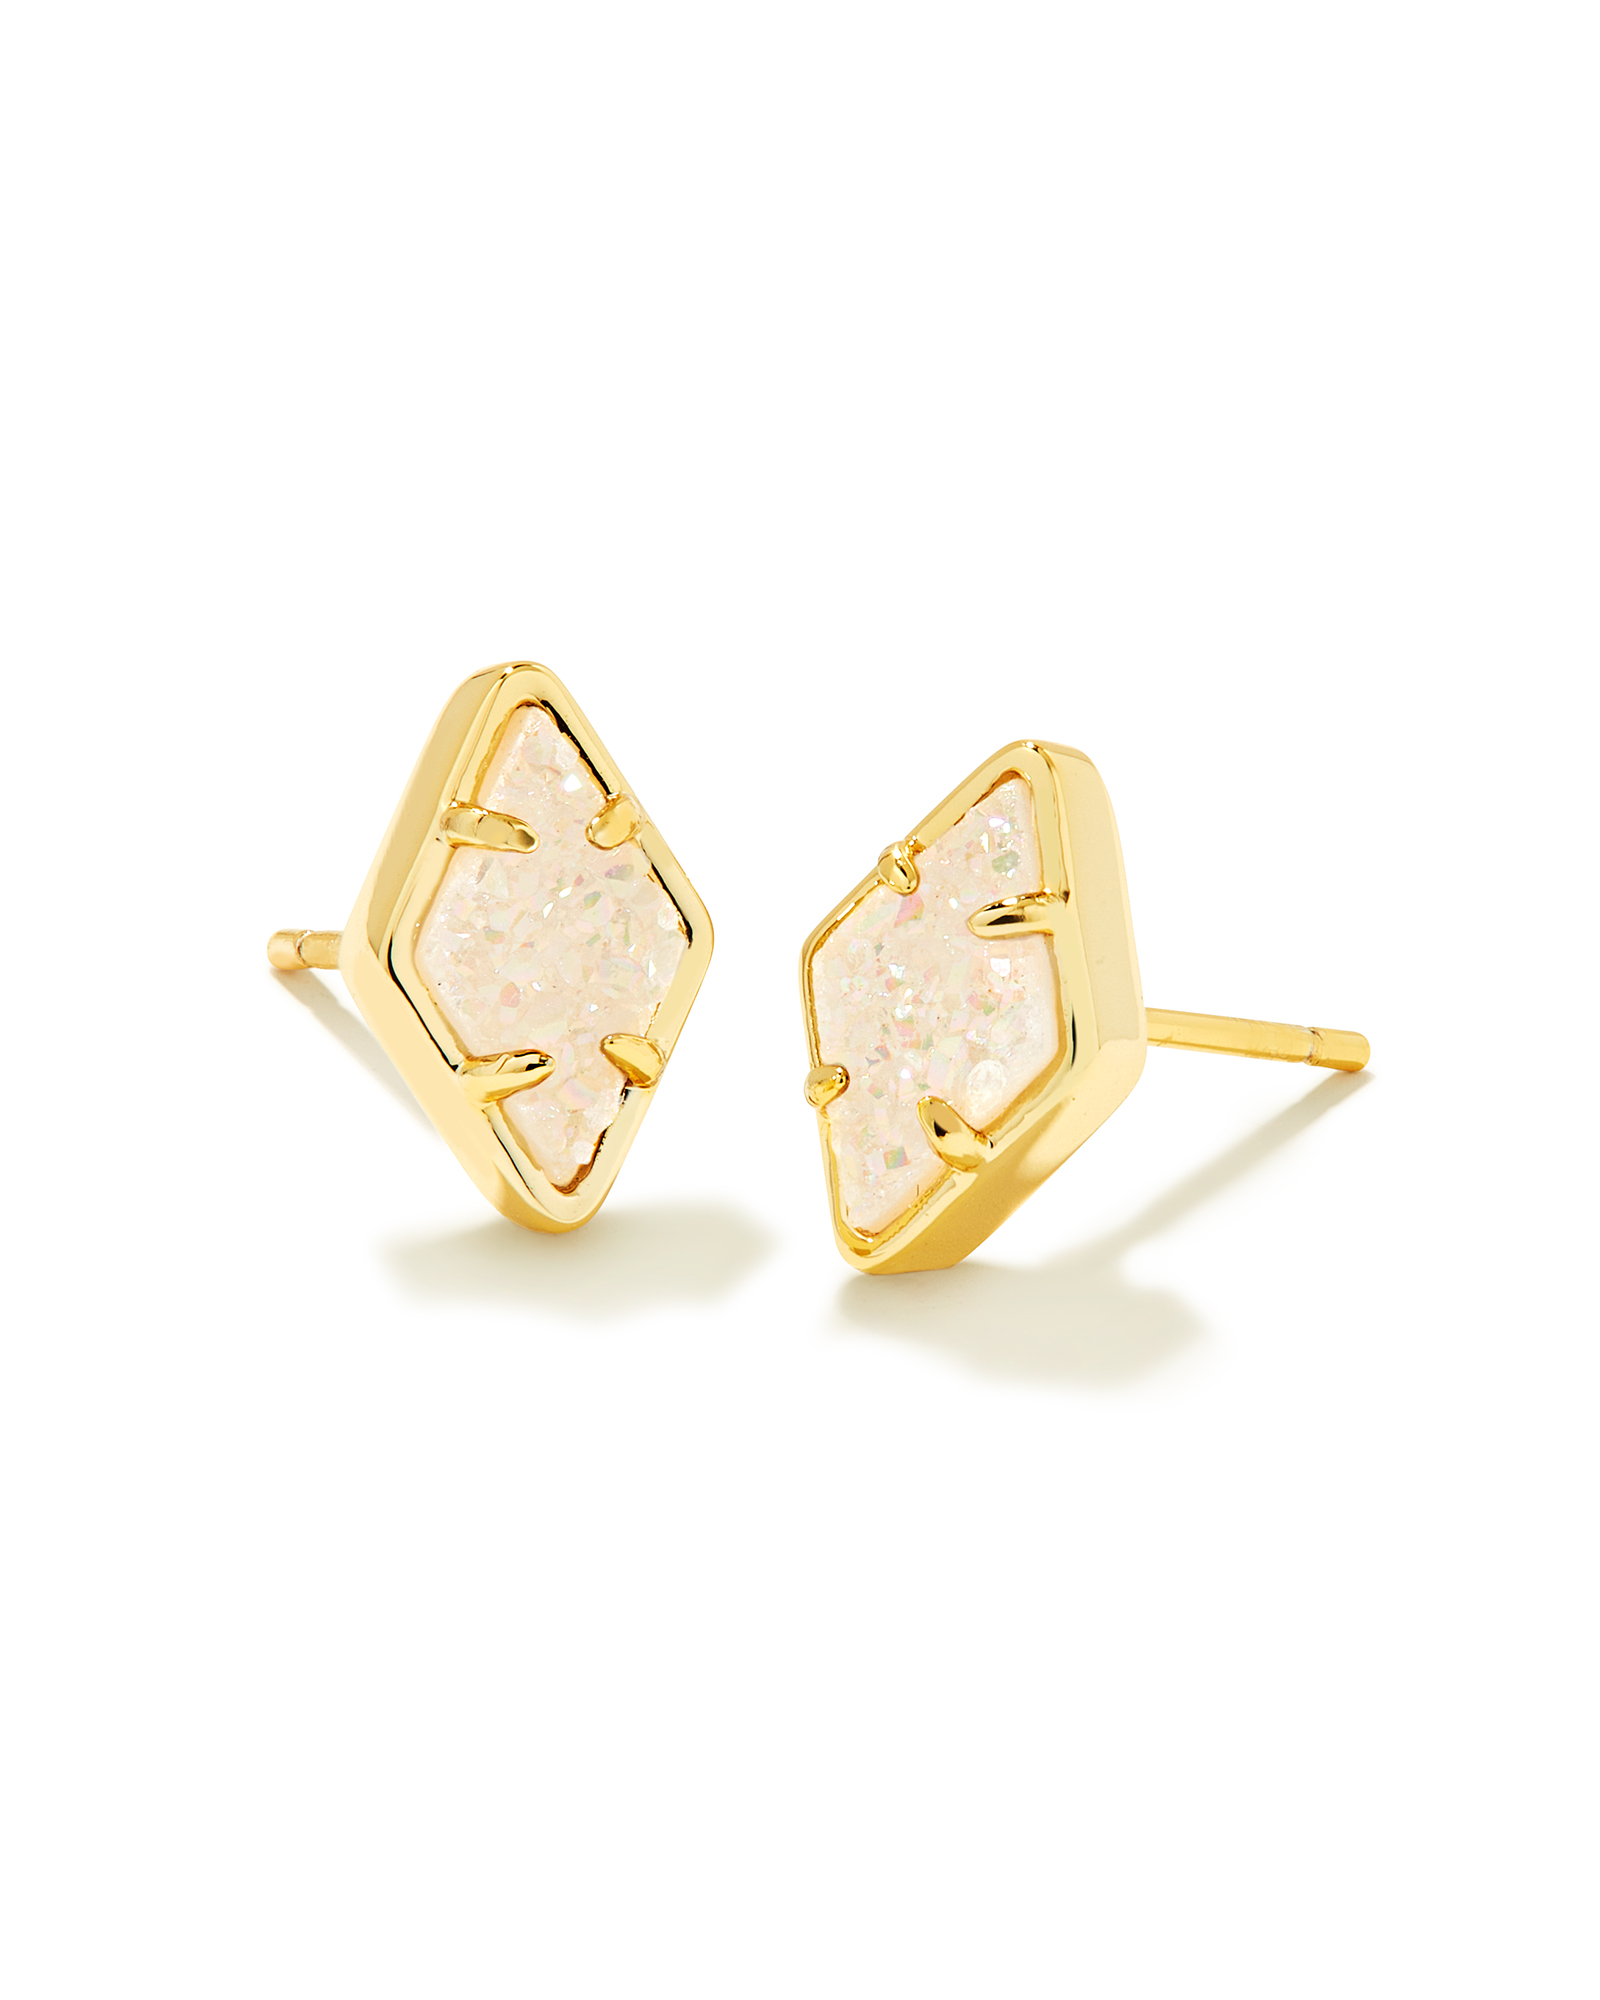 Kinsley Gold Stud Earrings in Iridescent Drusy | Kendra Scott